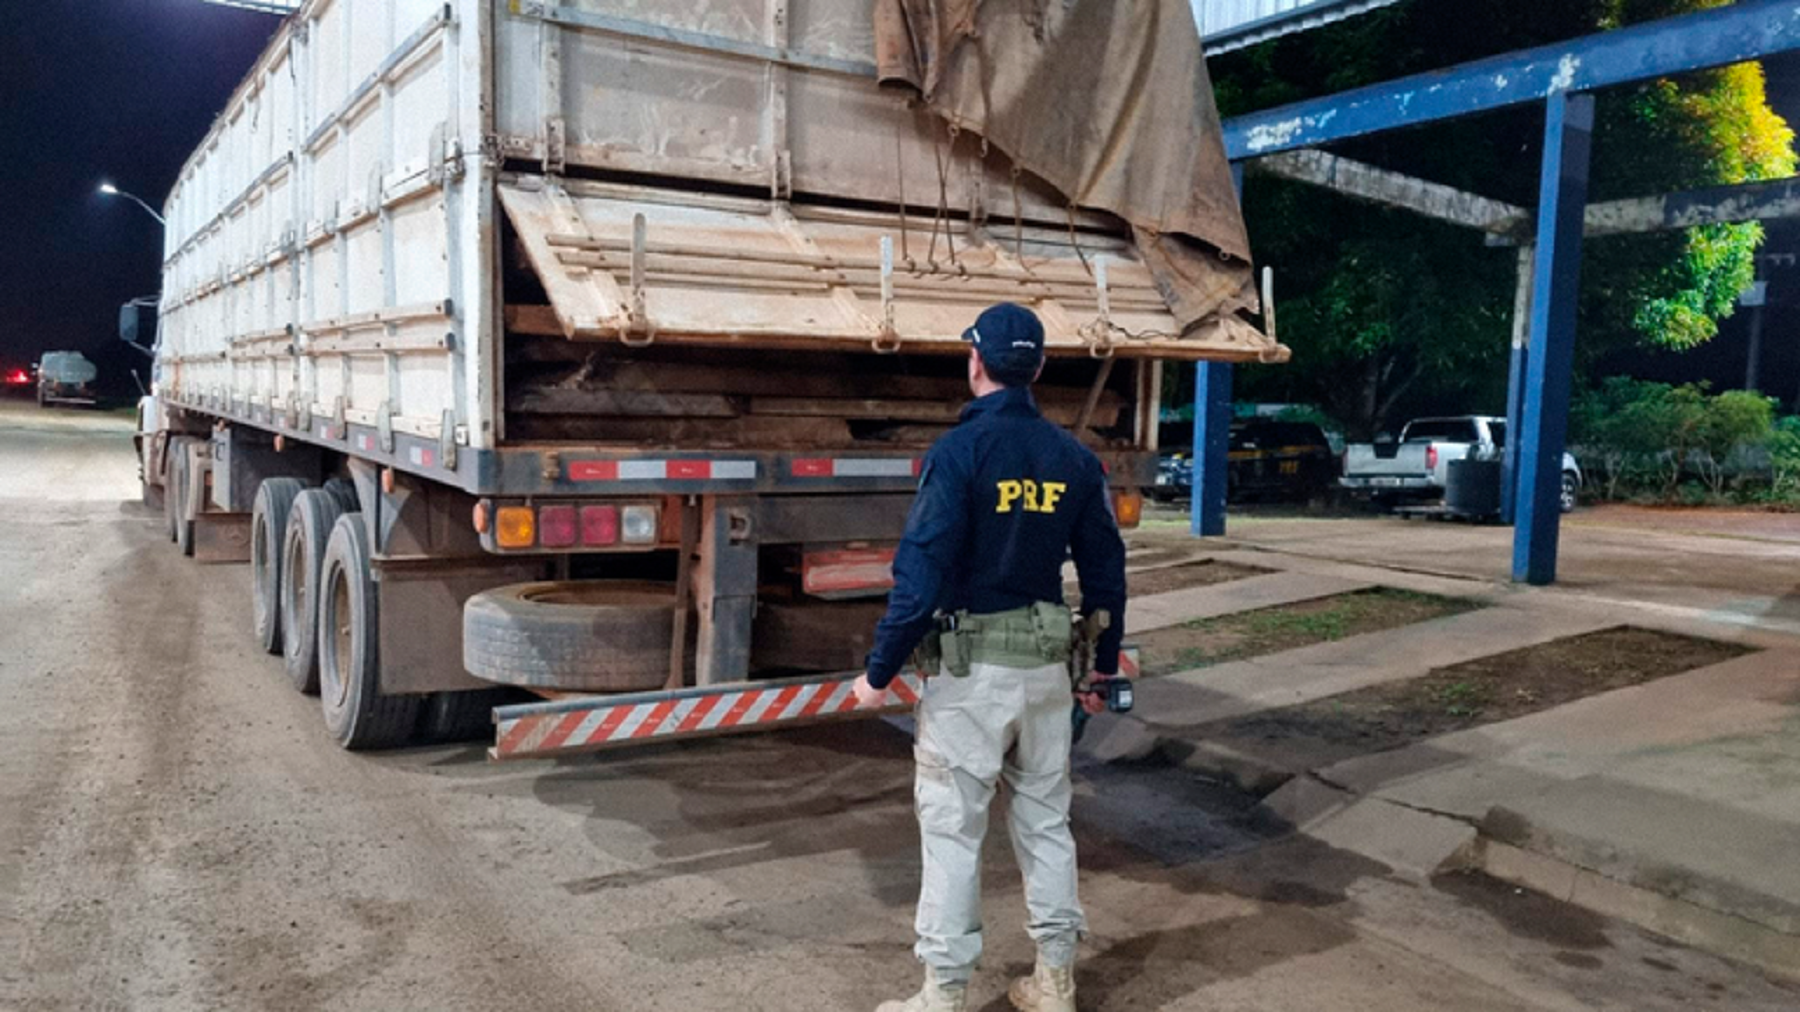 Caminhoneiro que transportava madeira sem o documento da carga foi impedido de seguir viagem pela PRF